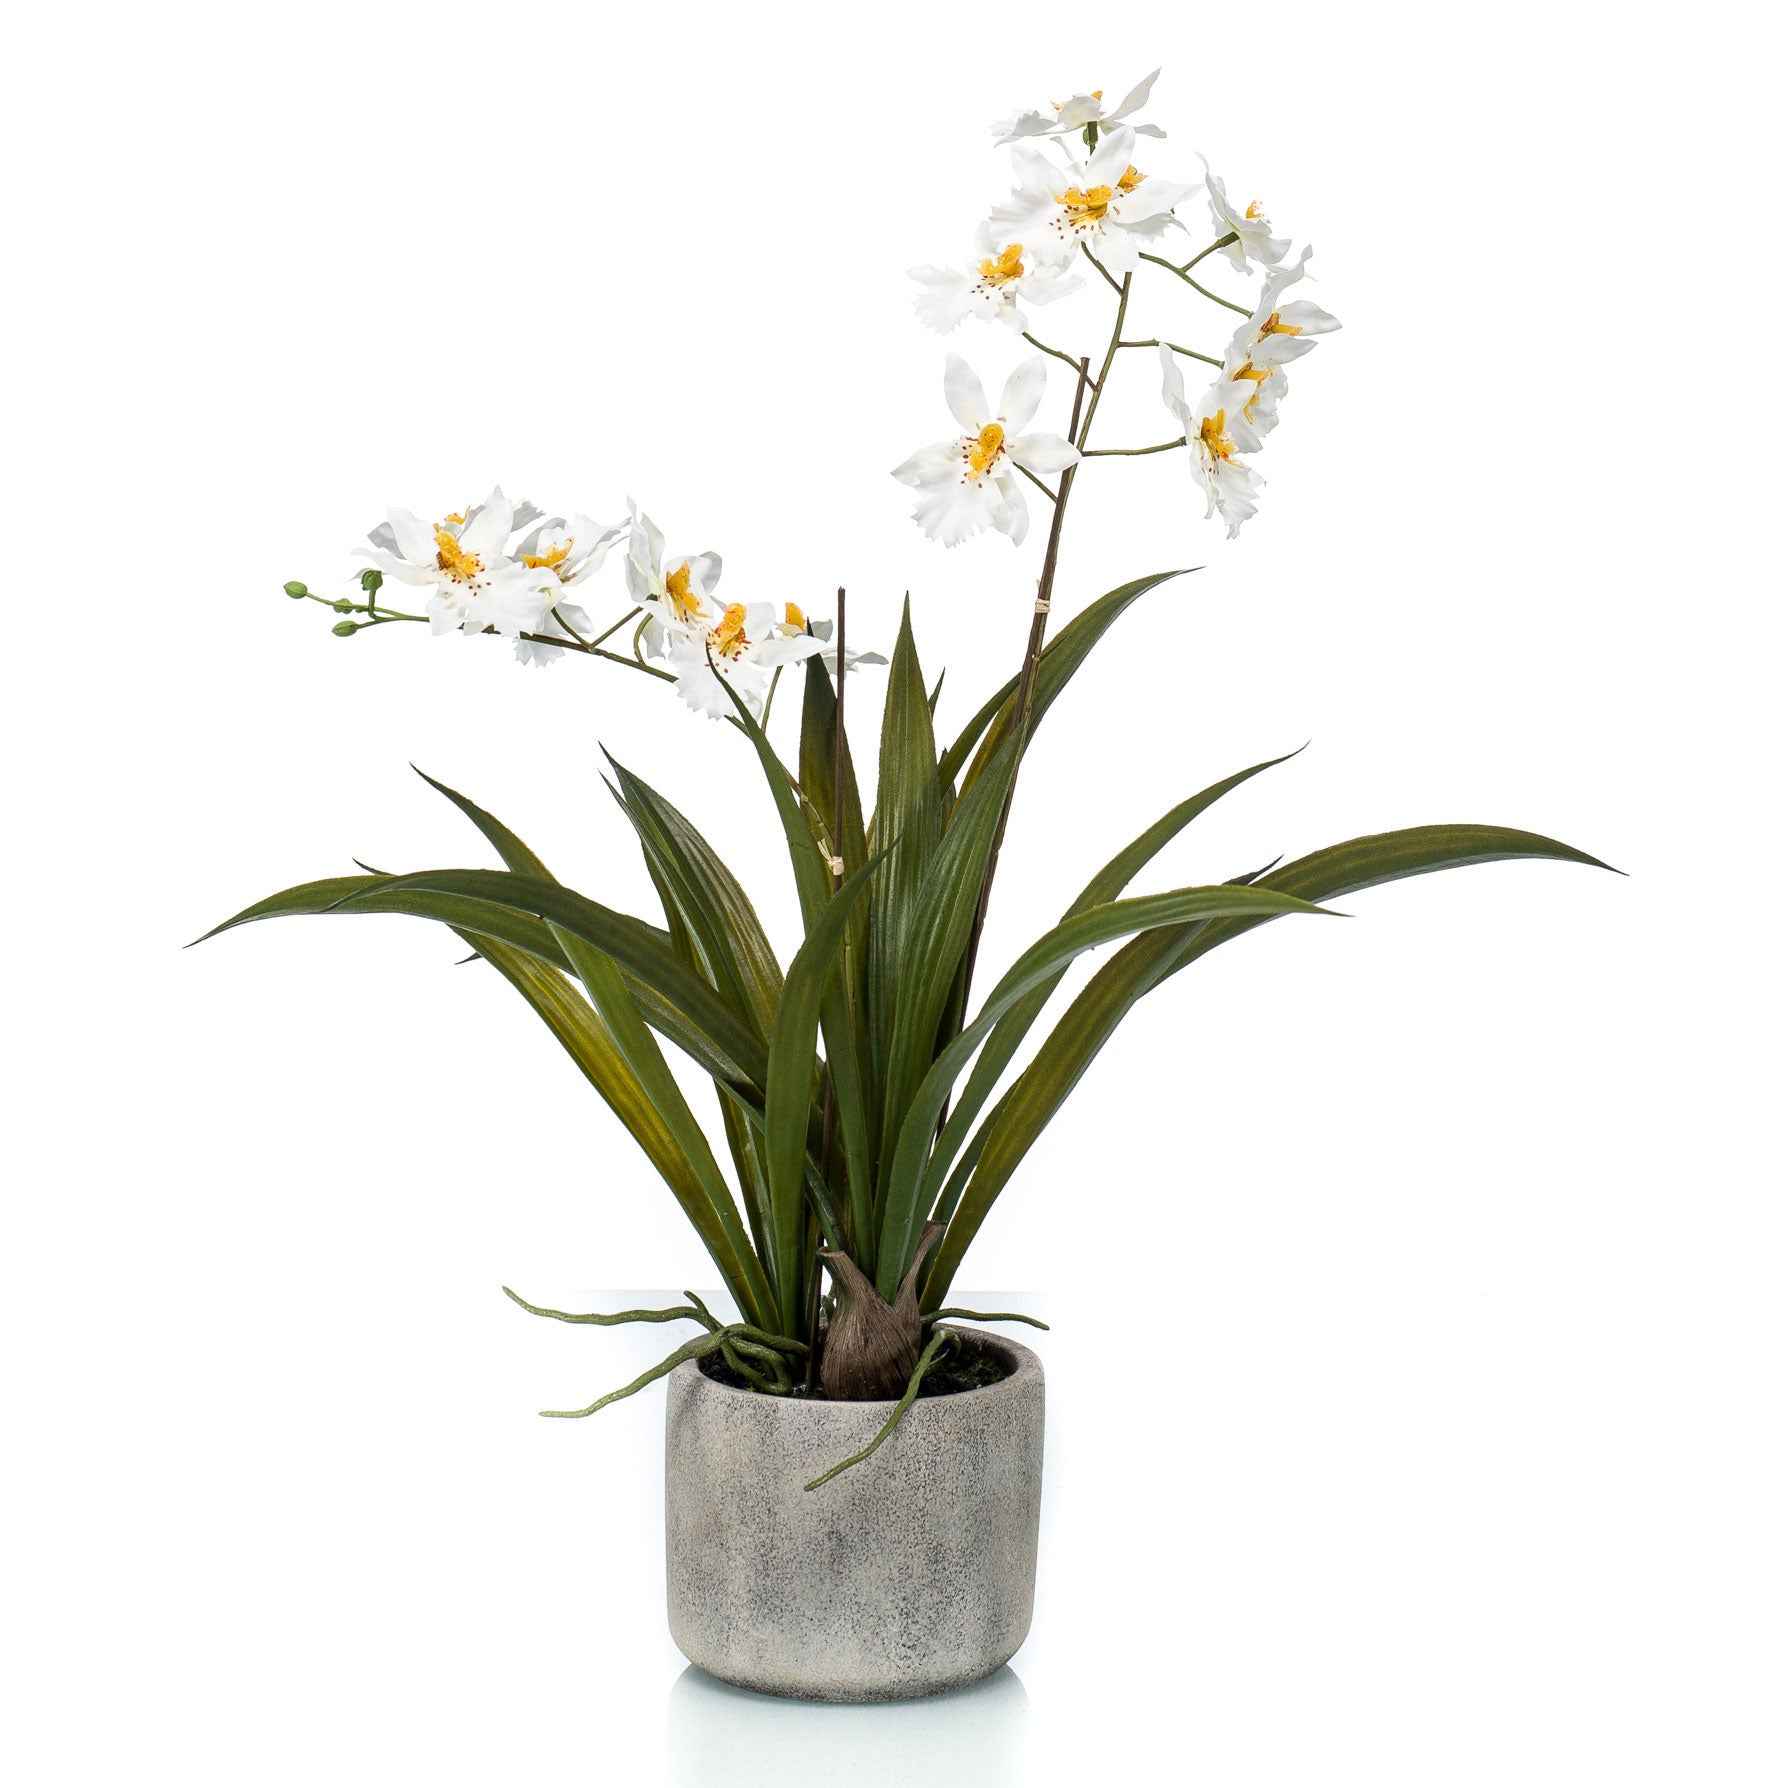 Plante artificielle Orchidée Oncidium blanc-jaune avec cache-pot céramique - Plantes artificielles